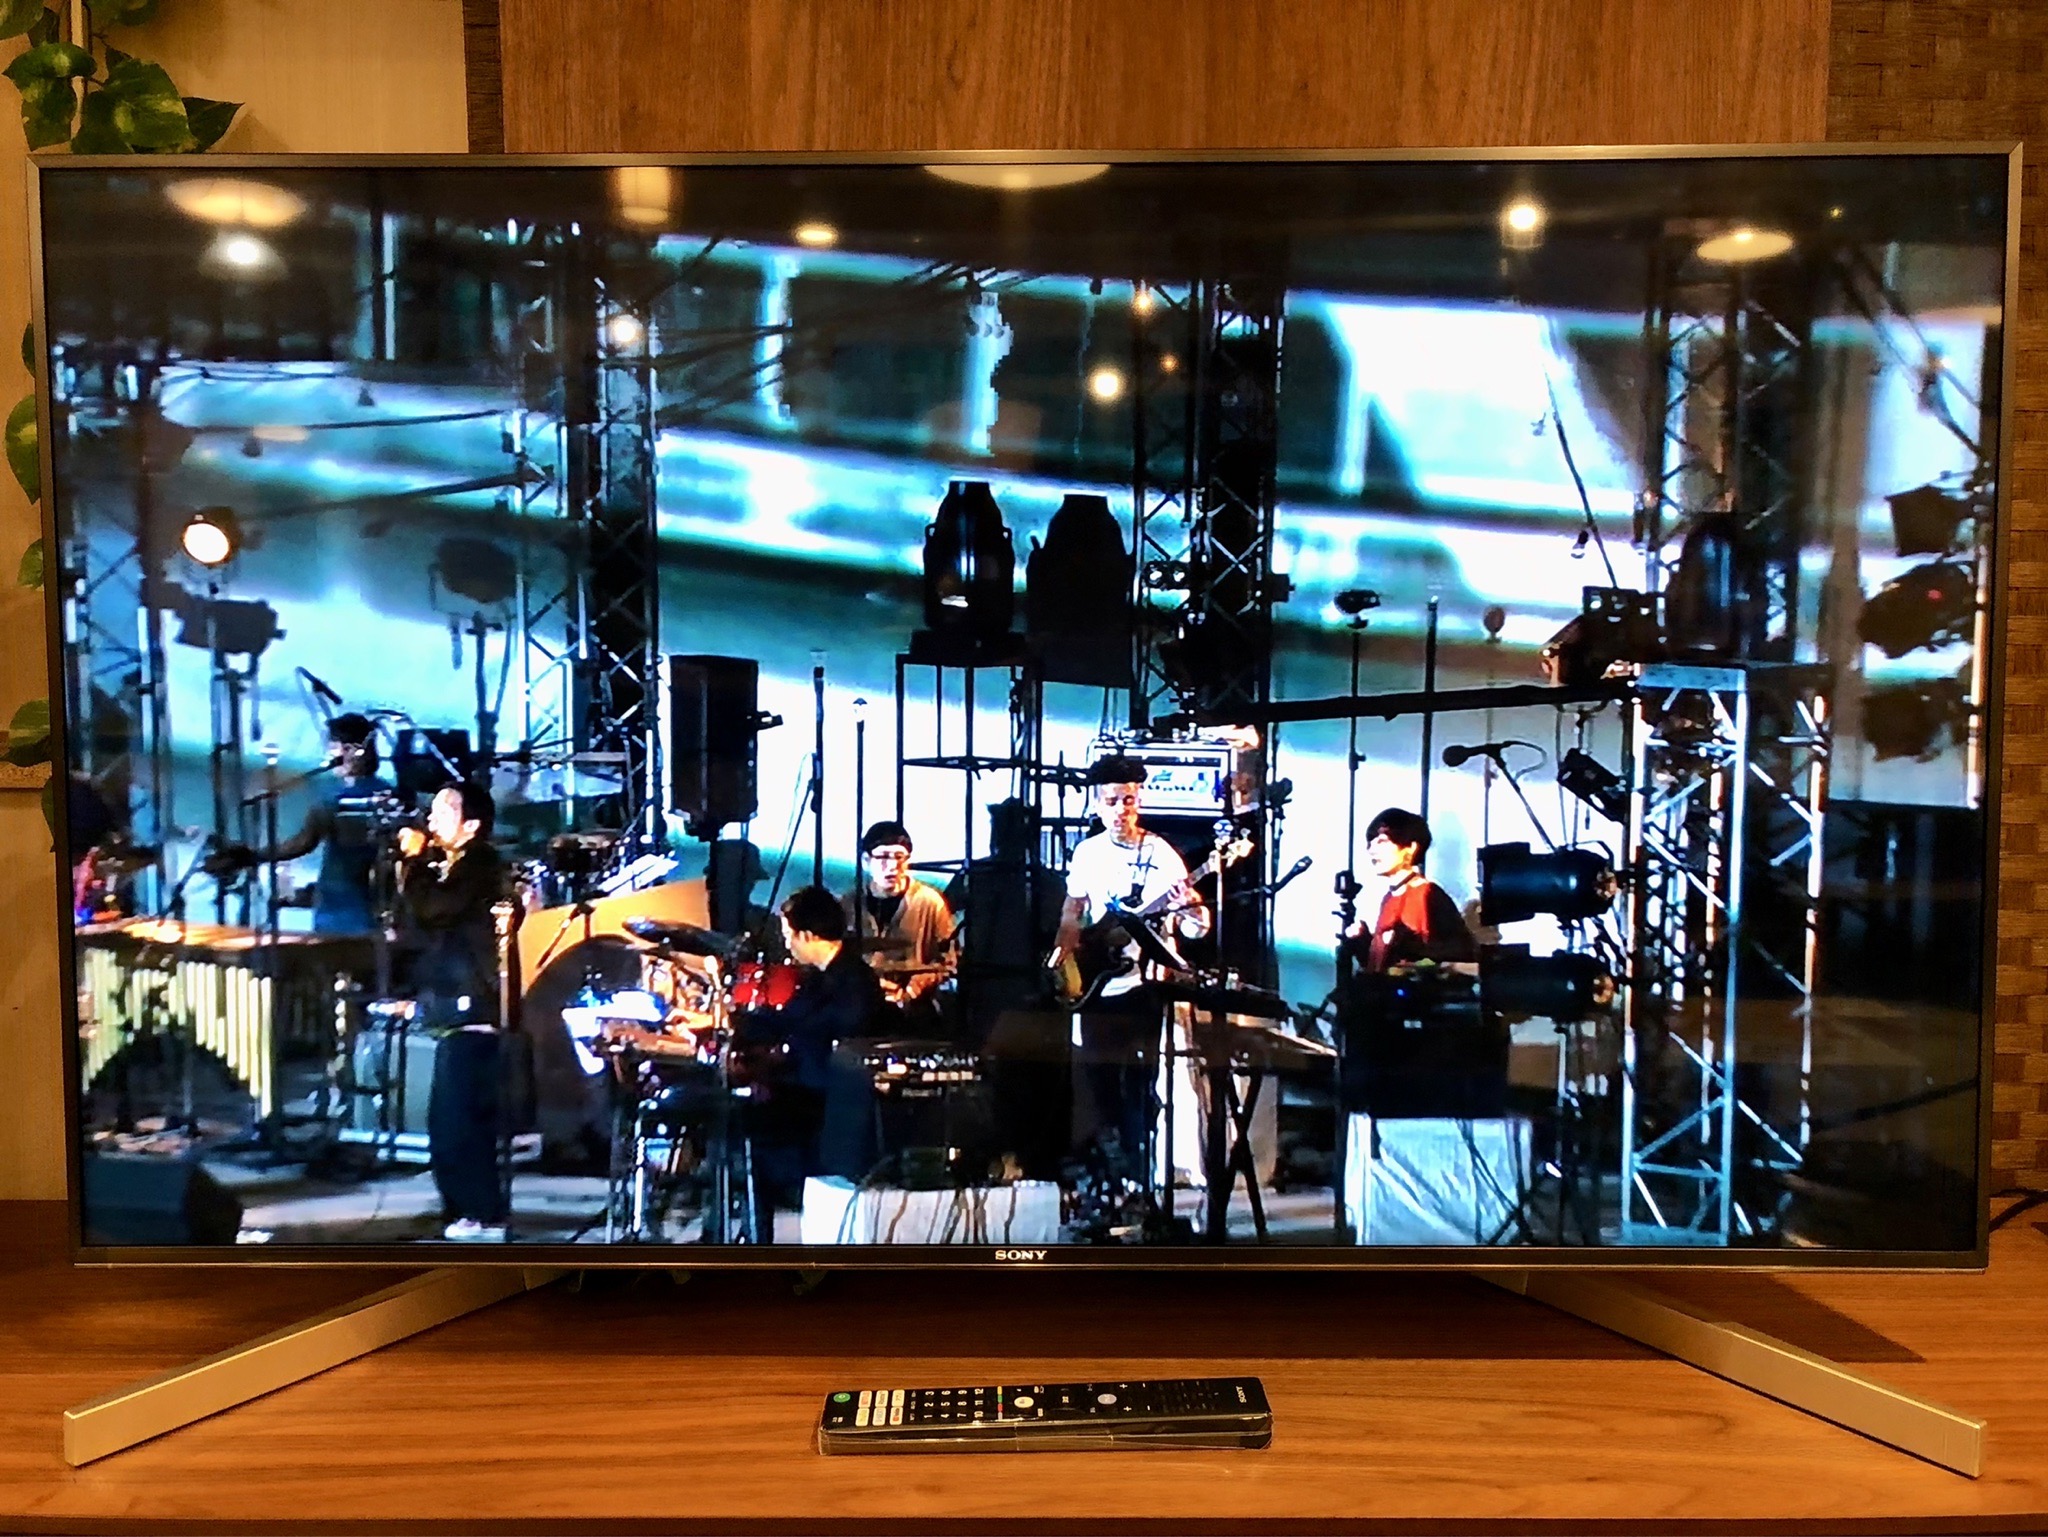 公式/送料無料 SONY 4K液晶テレビ（49型） BRAVIA テレビ